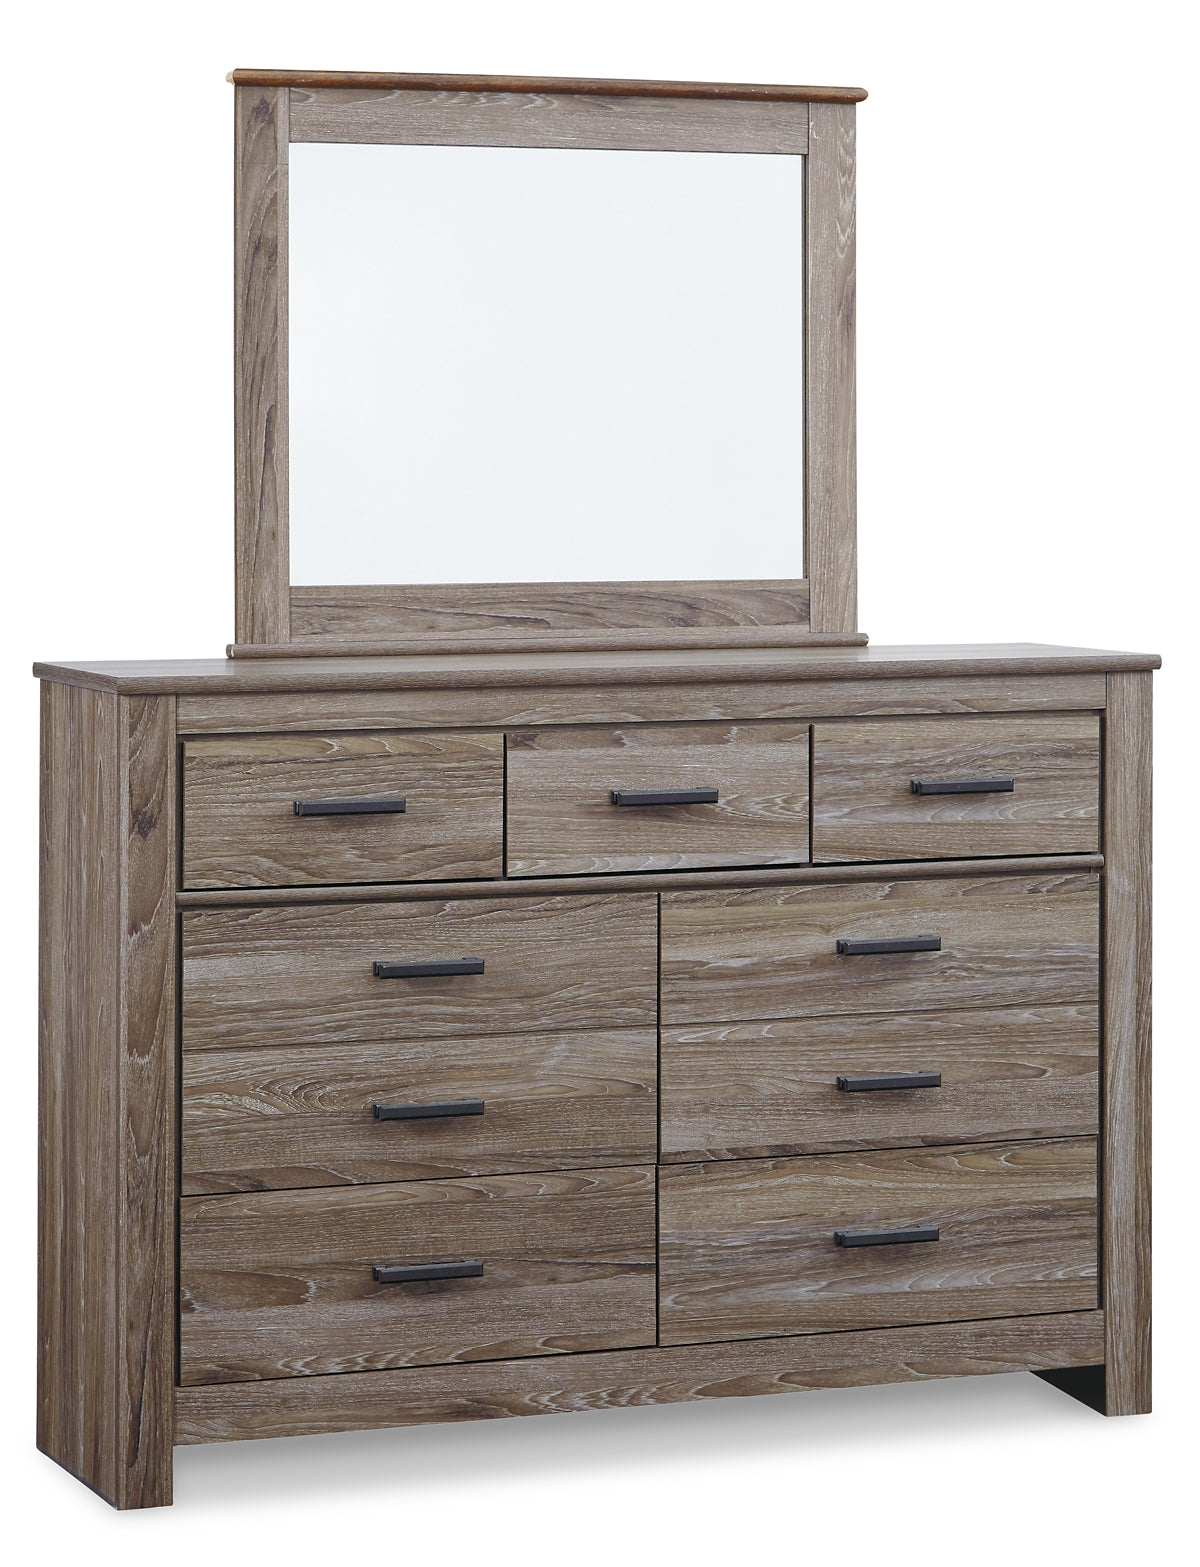 Zelen Queen Panel Bed with Mirrored Dresser JB's Furniture  Home Furniture, Home Decor, Furniture Store